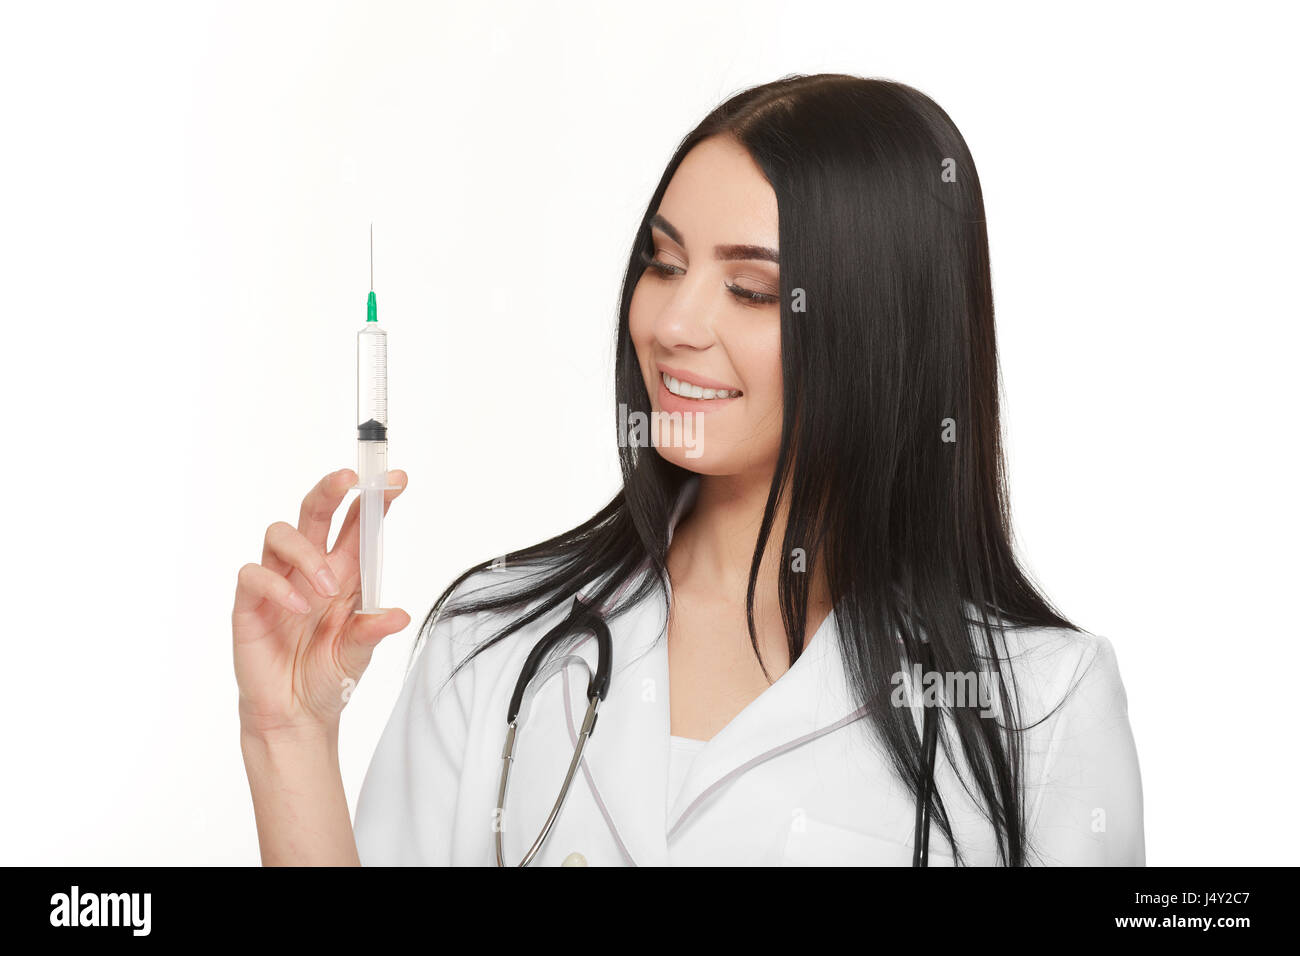 Ein Porträt von einer jungen Ärztin lächelnd mit einer Spritze in der hand Stockfoto